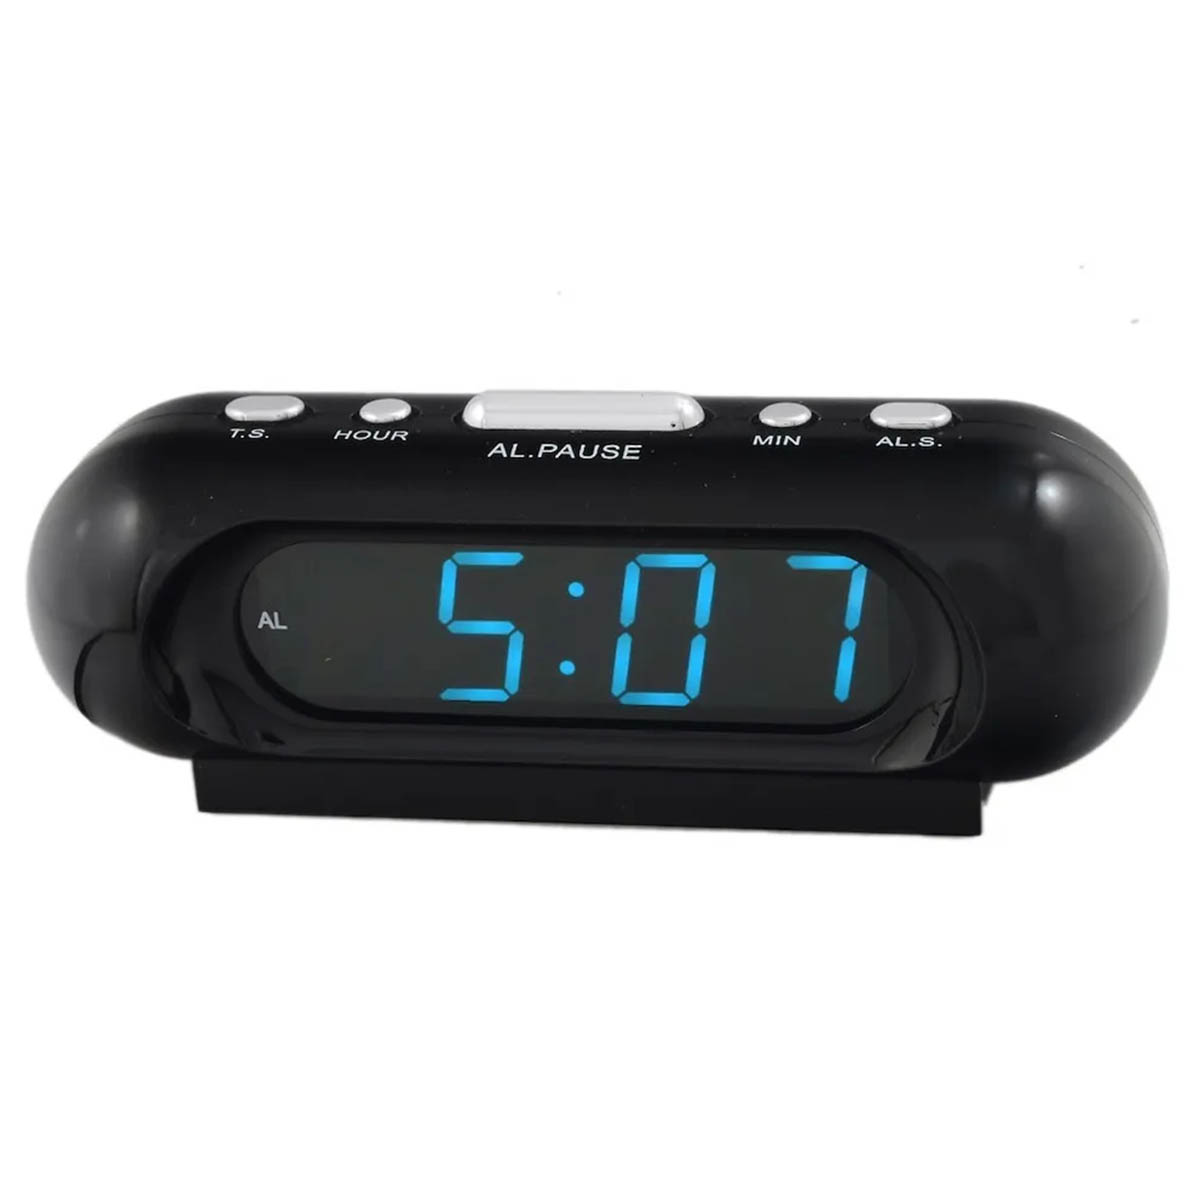 Электронные часы VST-716, будильник, синий циферблат, цвет черный